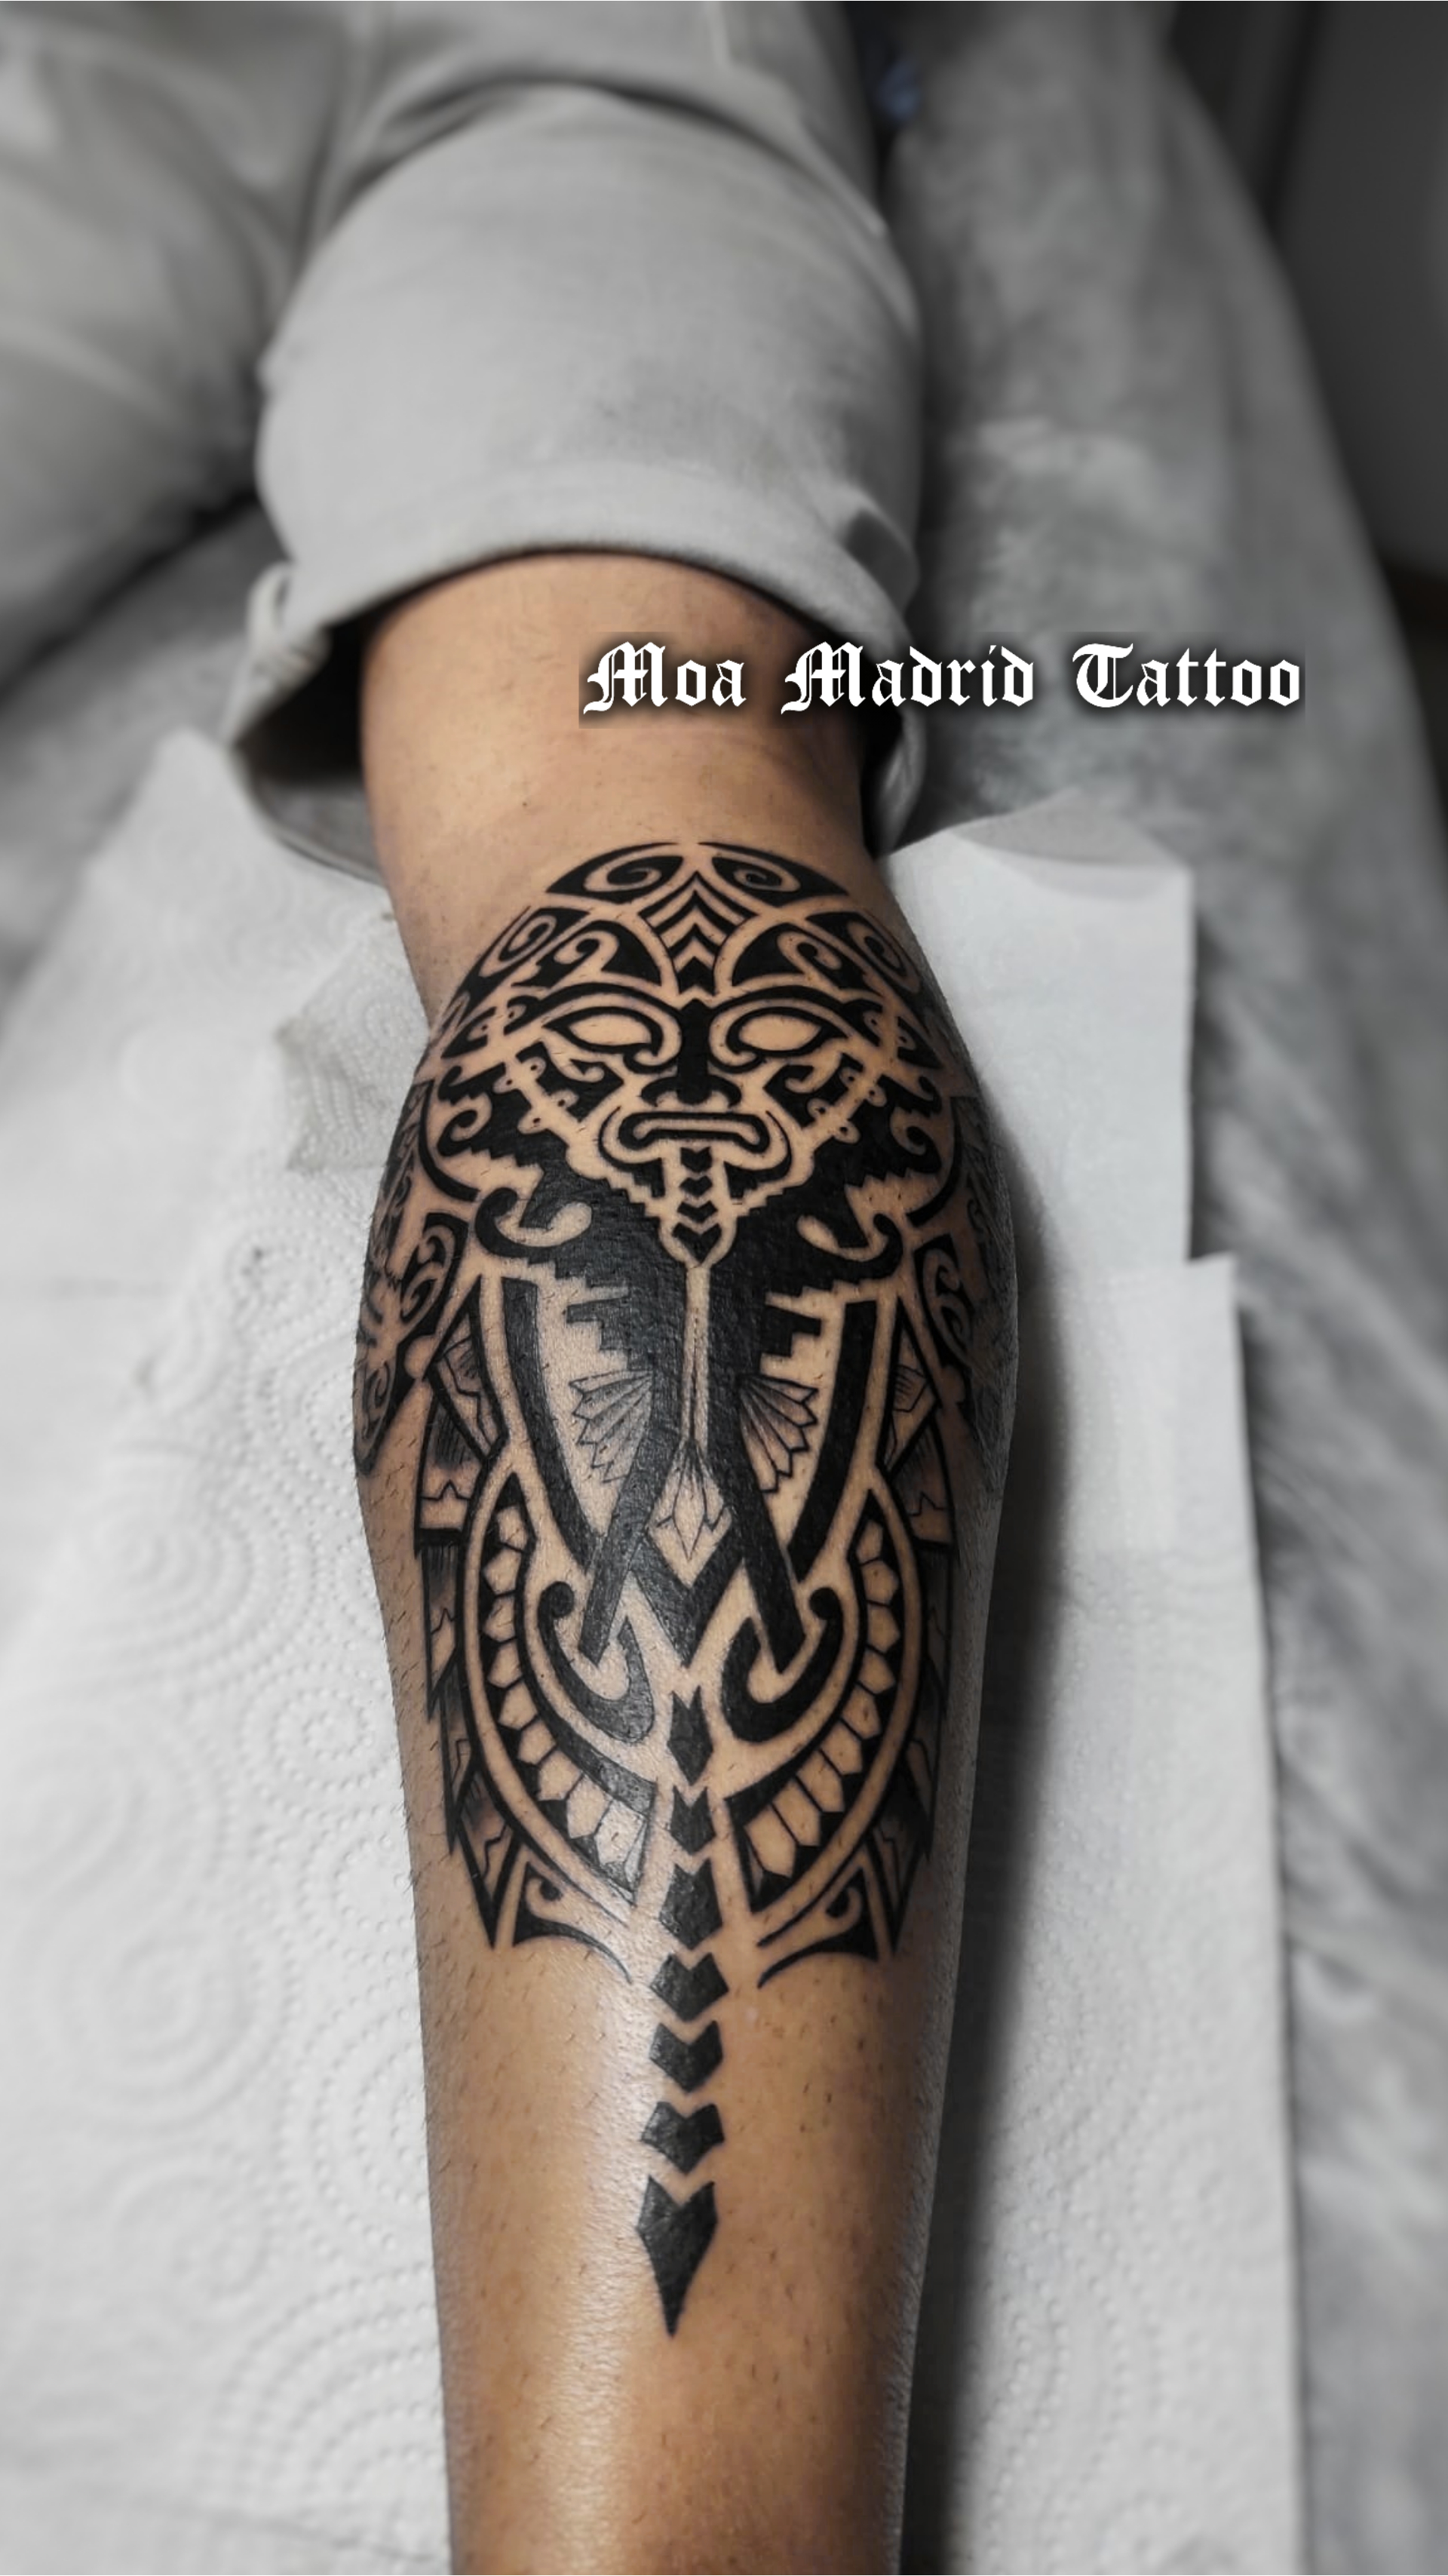 Moderno tatuaje de inspiración maorí en la pierna.